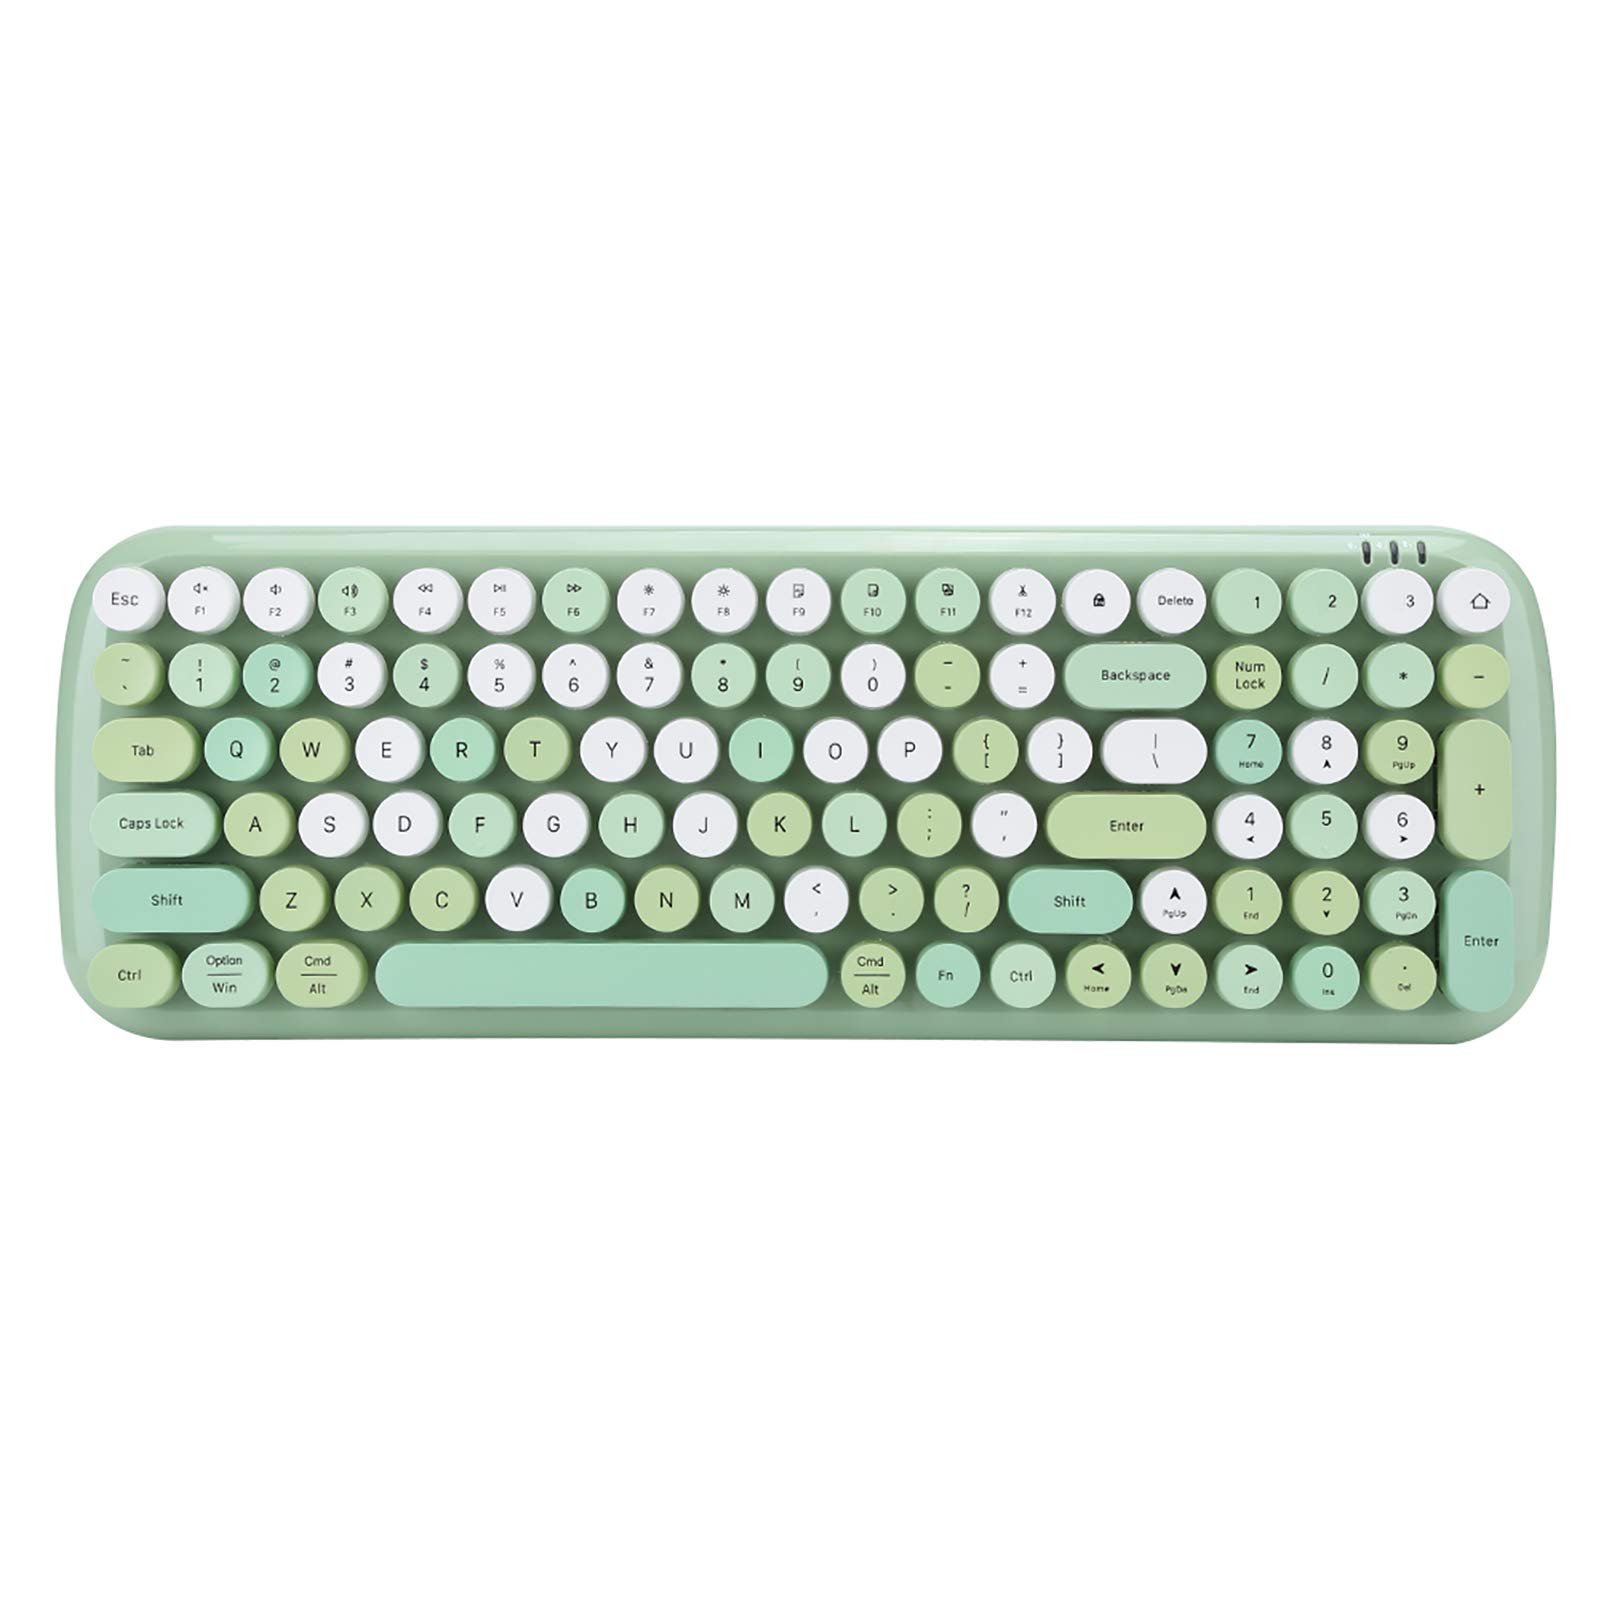 Goshyda Drahtlose Tastatur mit Mehreren Geräten, Bluetooth 5.1 Automatisch stromsparend Modische, praktische Tastatur für Laptop-Mobiltelefon-Tablet(Grün)